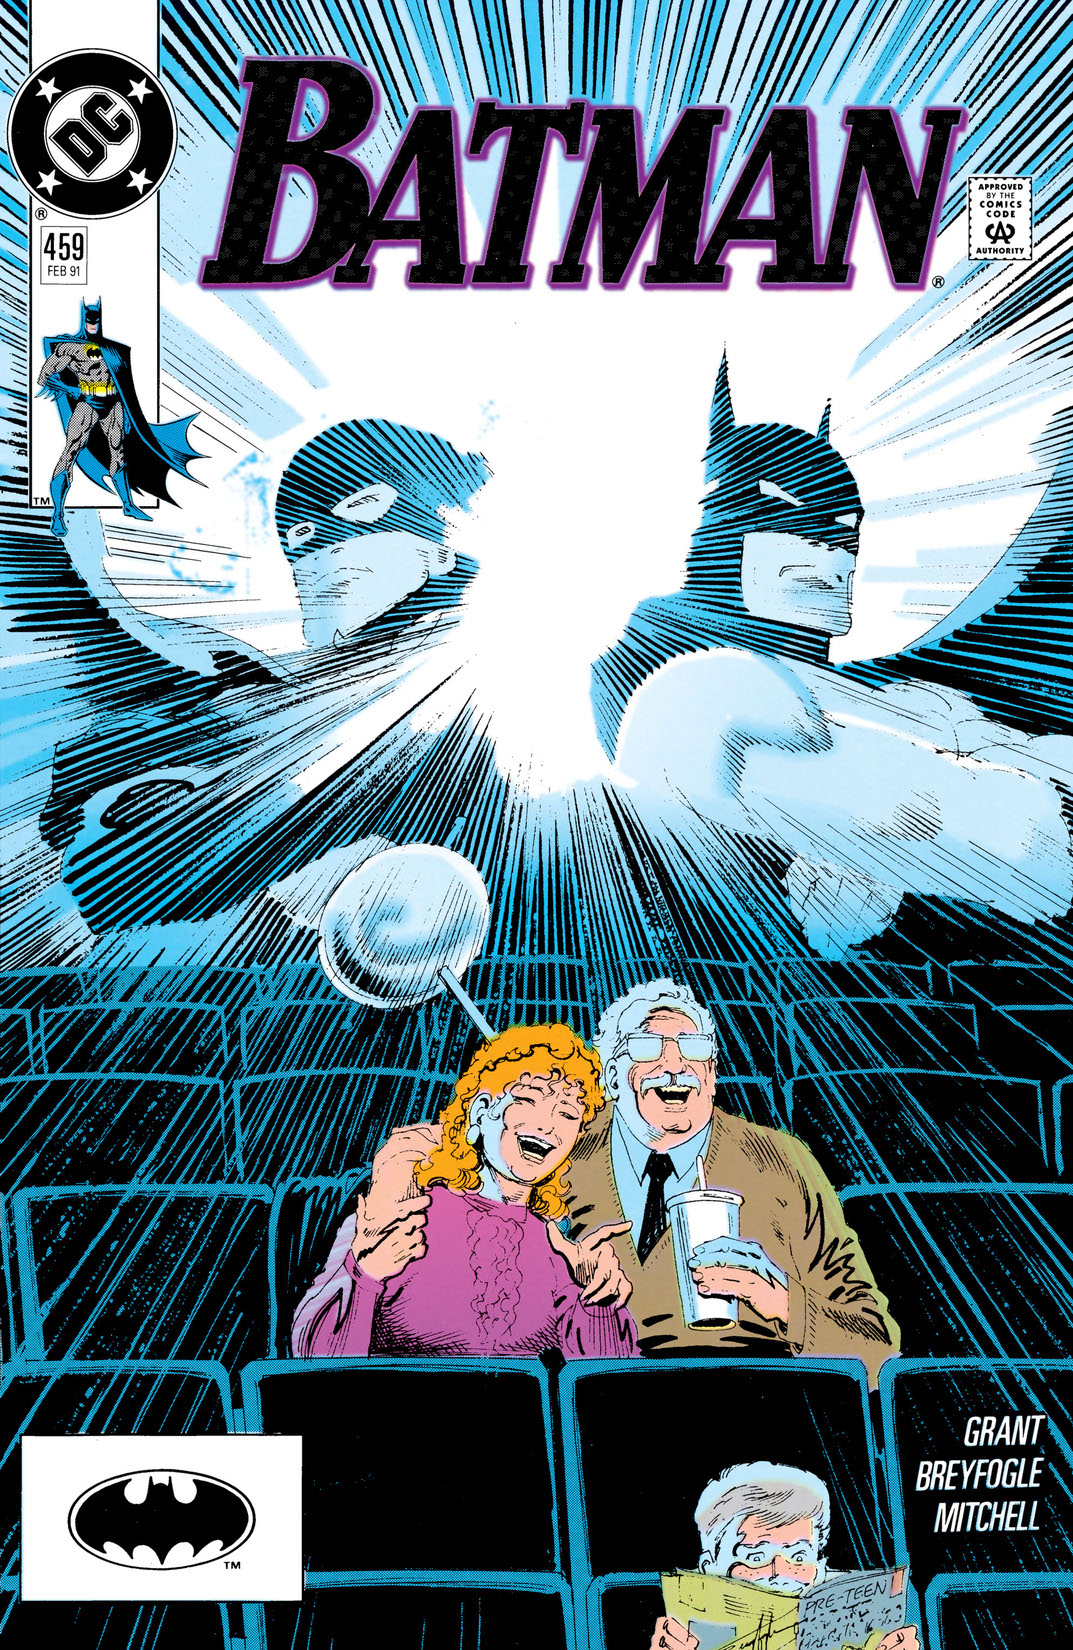 Batman (1940-) #459 preview images